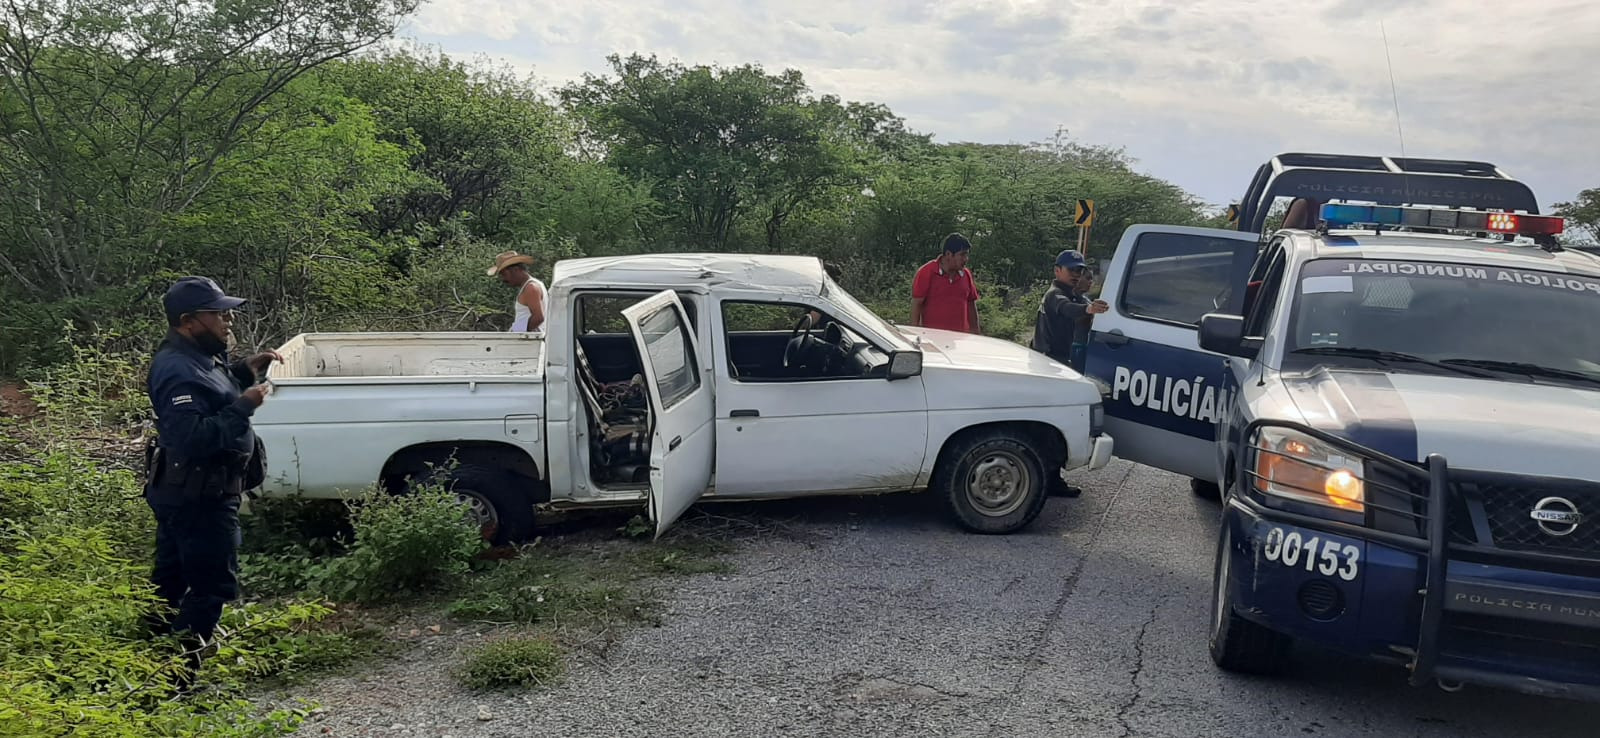 Volcadura fatal; un hombre murió y cinco personas resultaron severamente lesionadas | El Imparcial de Oaxaca